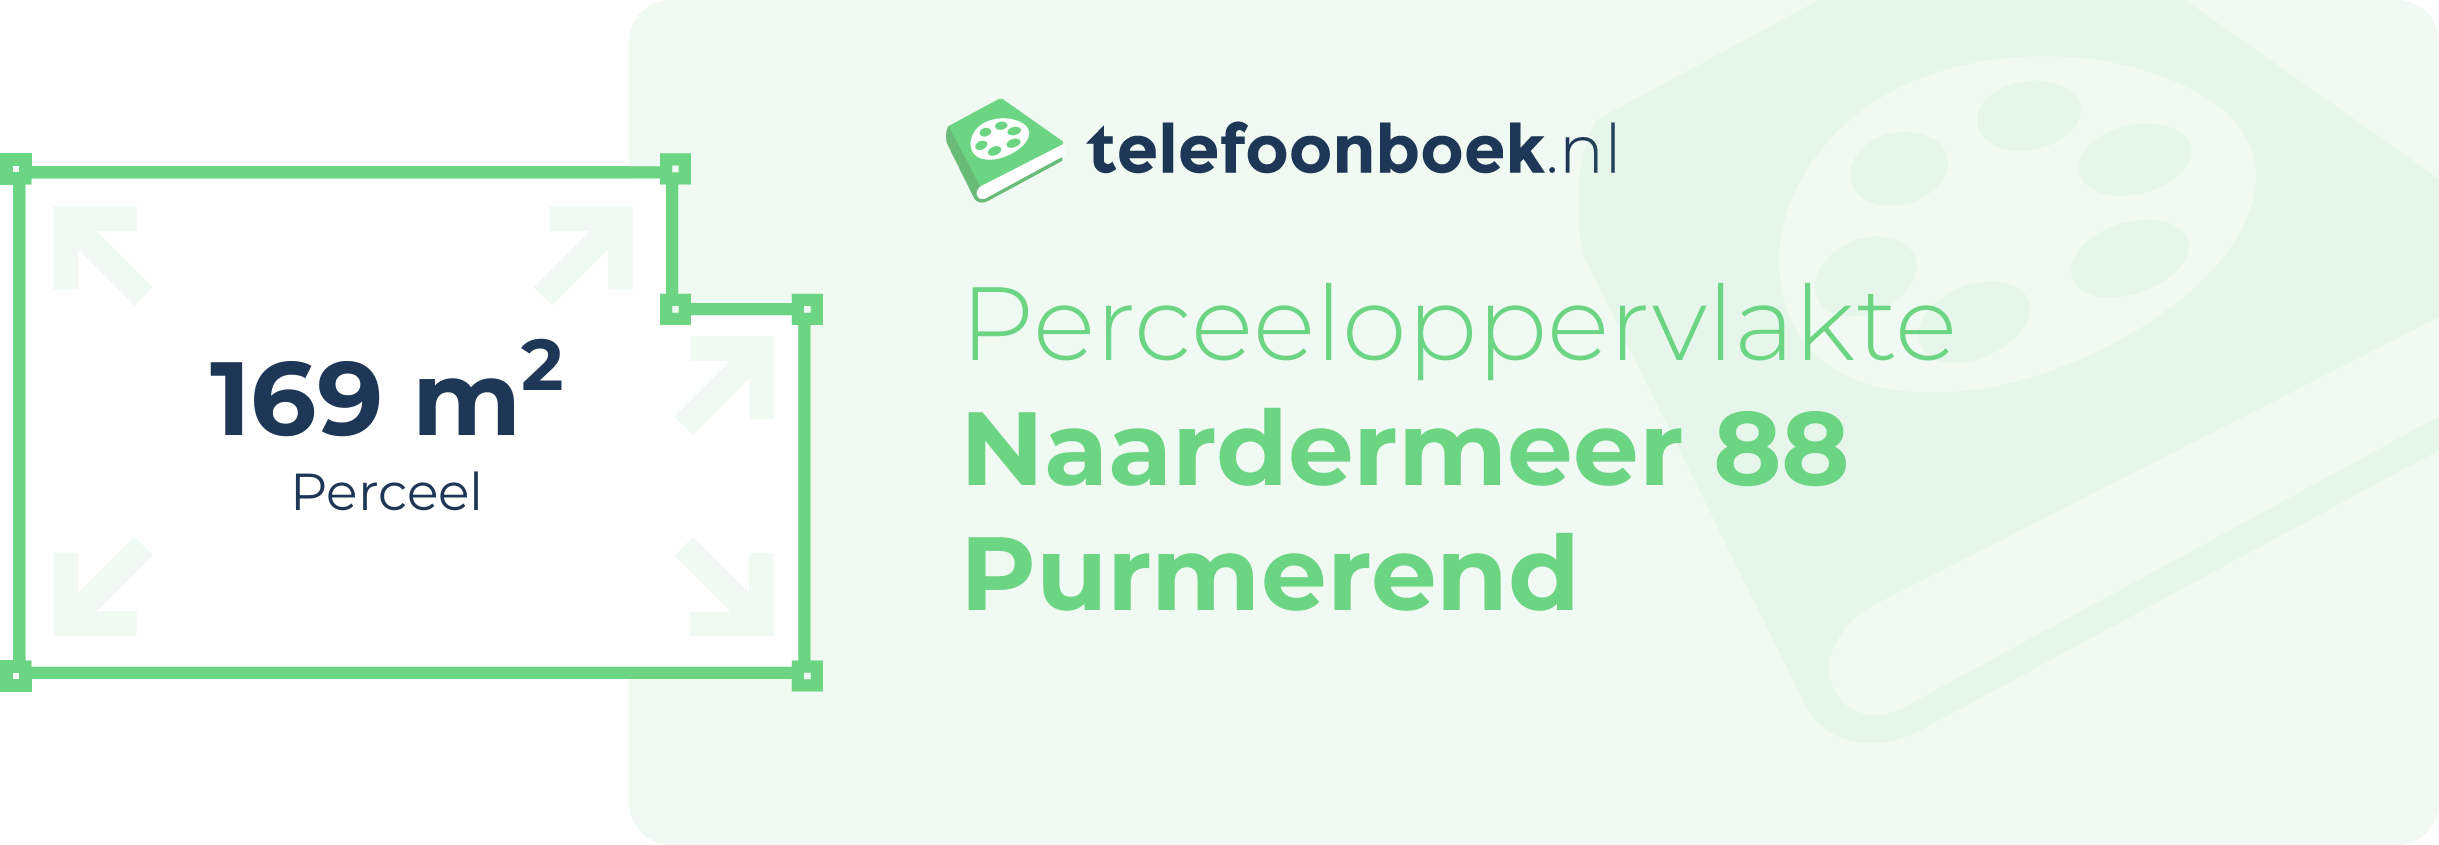 Perceeloppervlakte Naardermeer 88 Purmerend